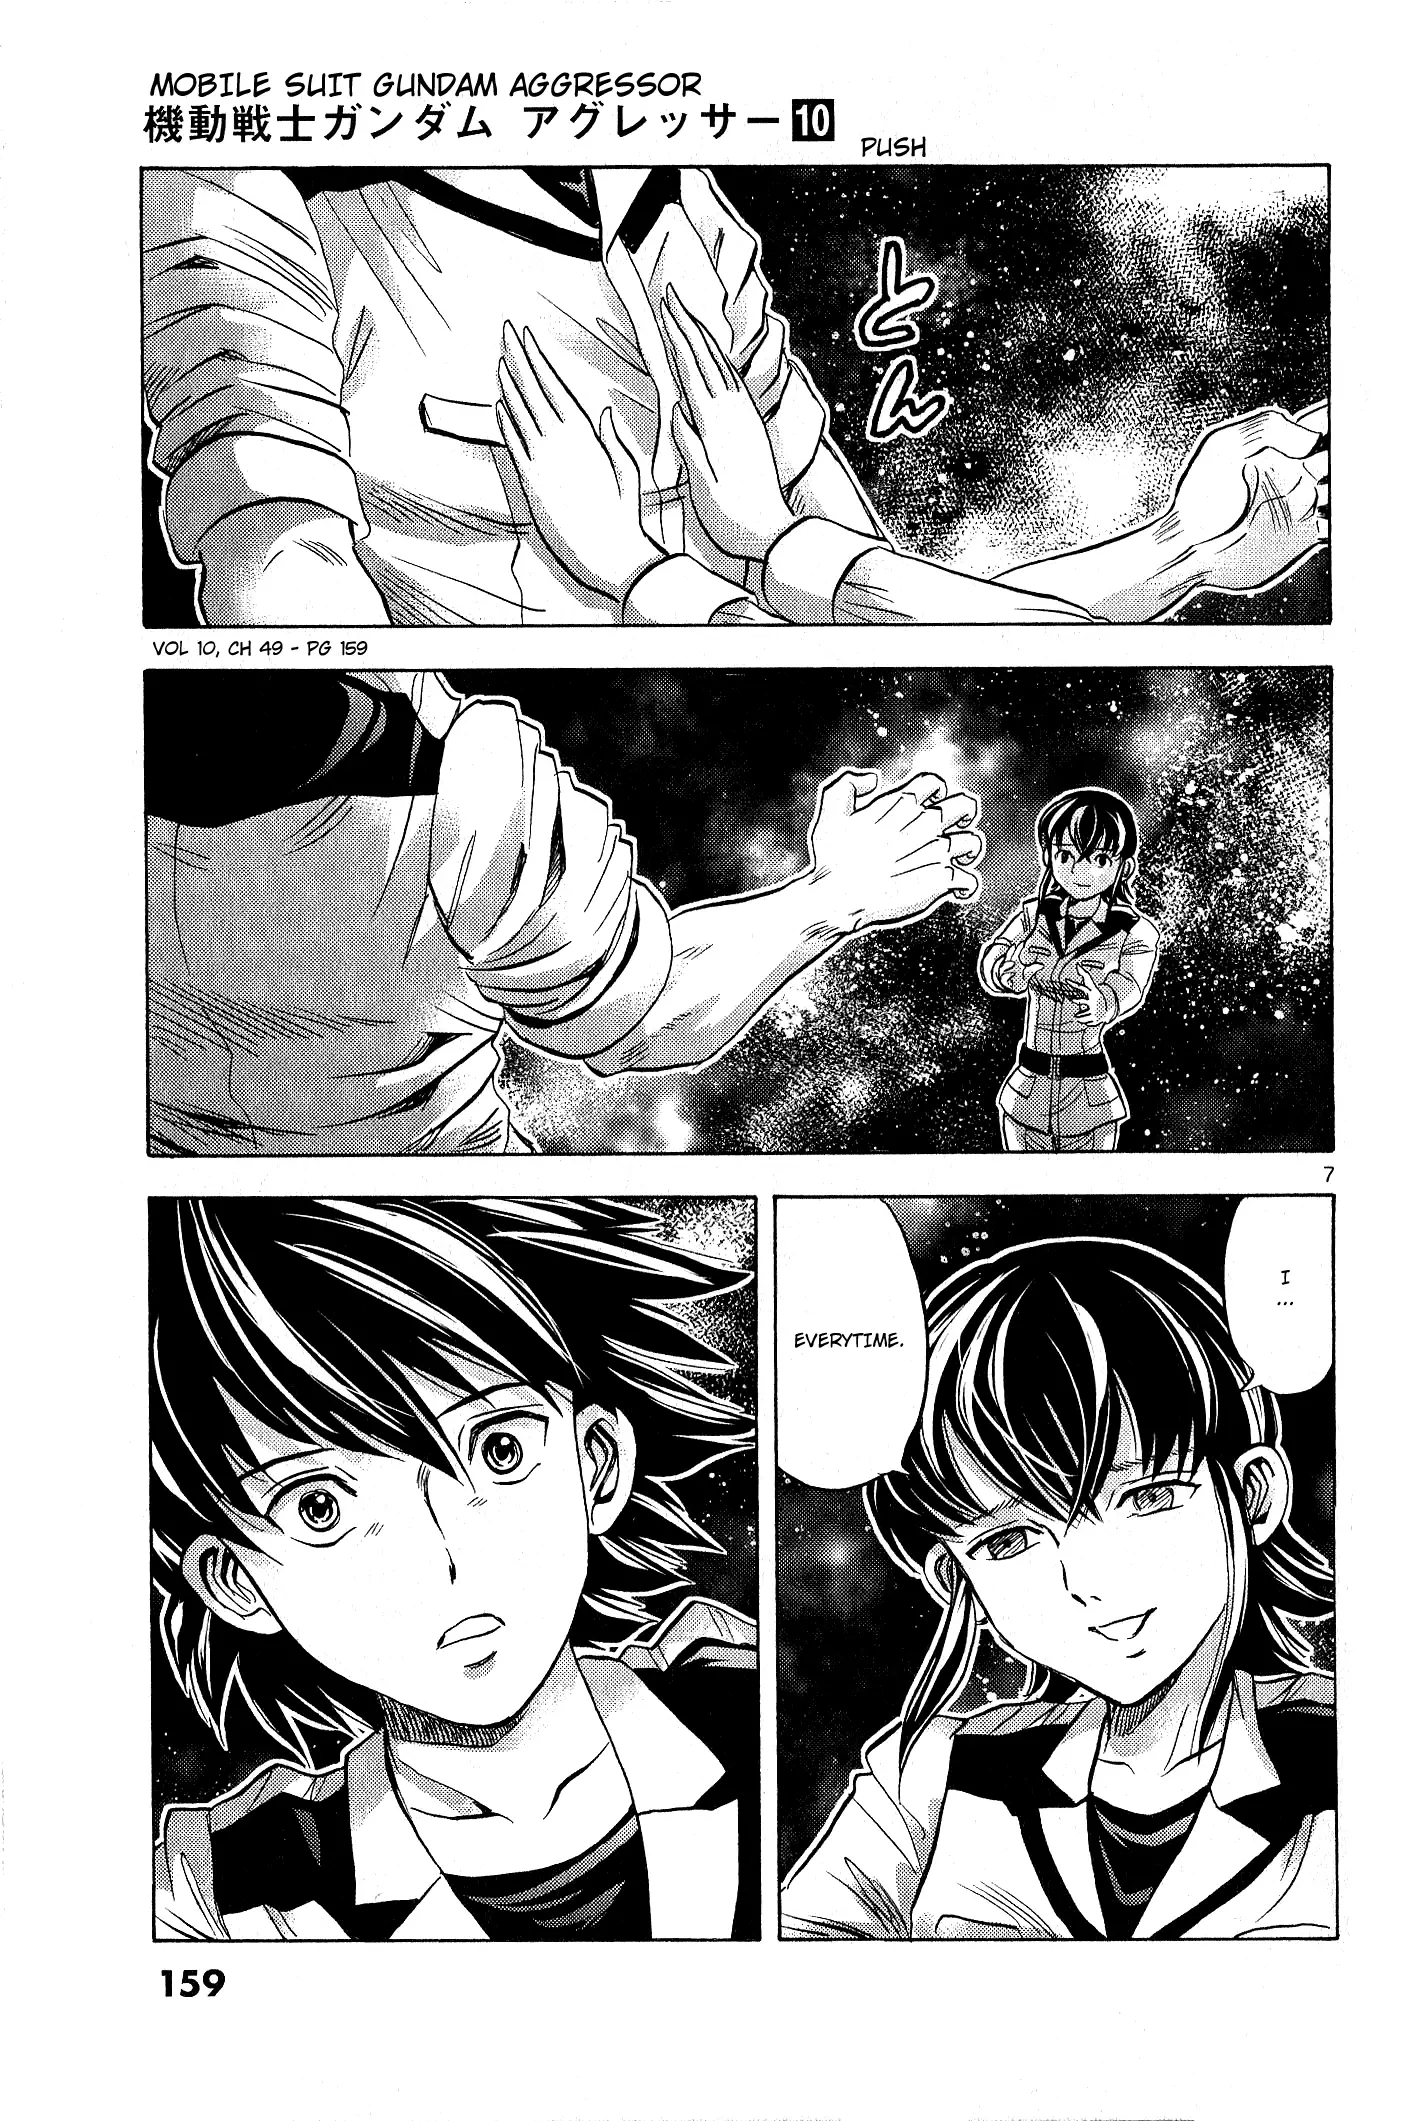 Mobile Suit Gundam Aggressor - 49 page 7-6c6dfa05